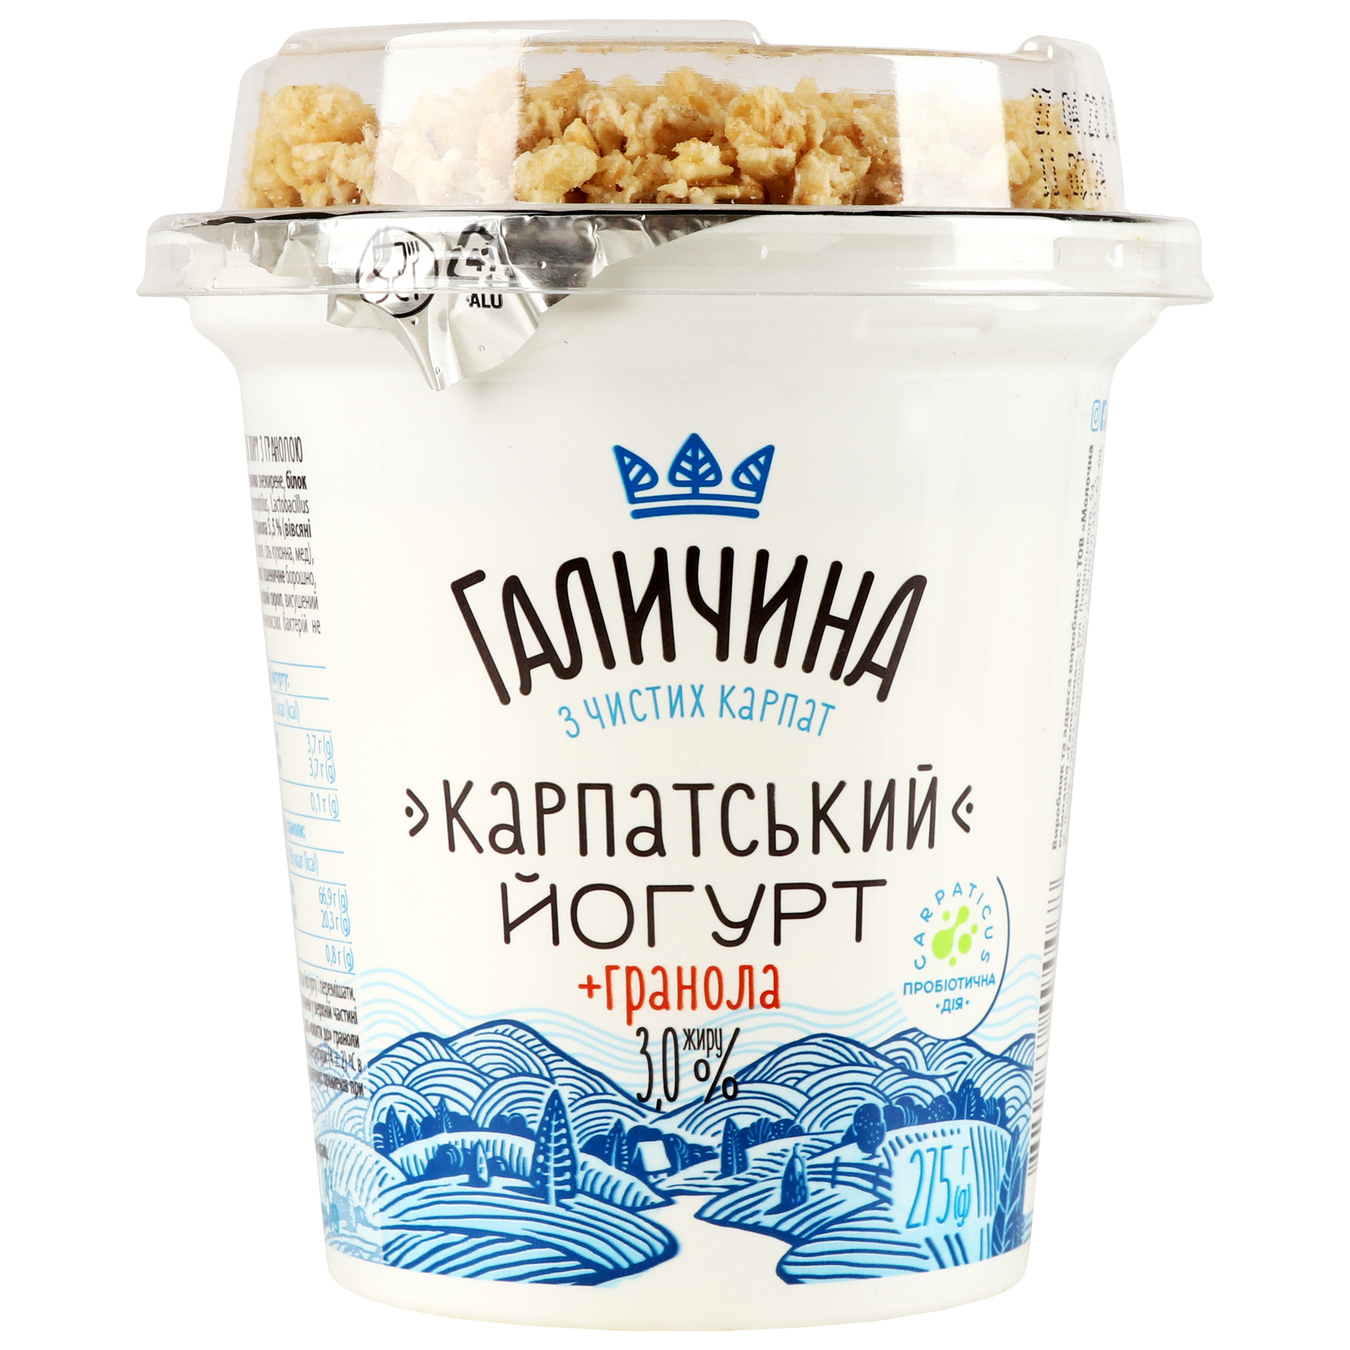 Galychyna Carpathian Sugar-Free Granola Flavored Yogurt 3% 275g